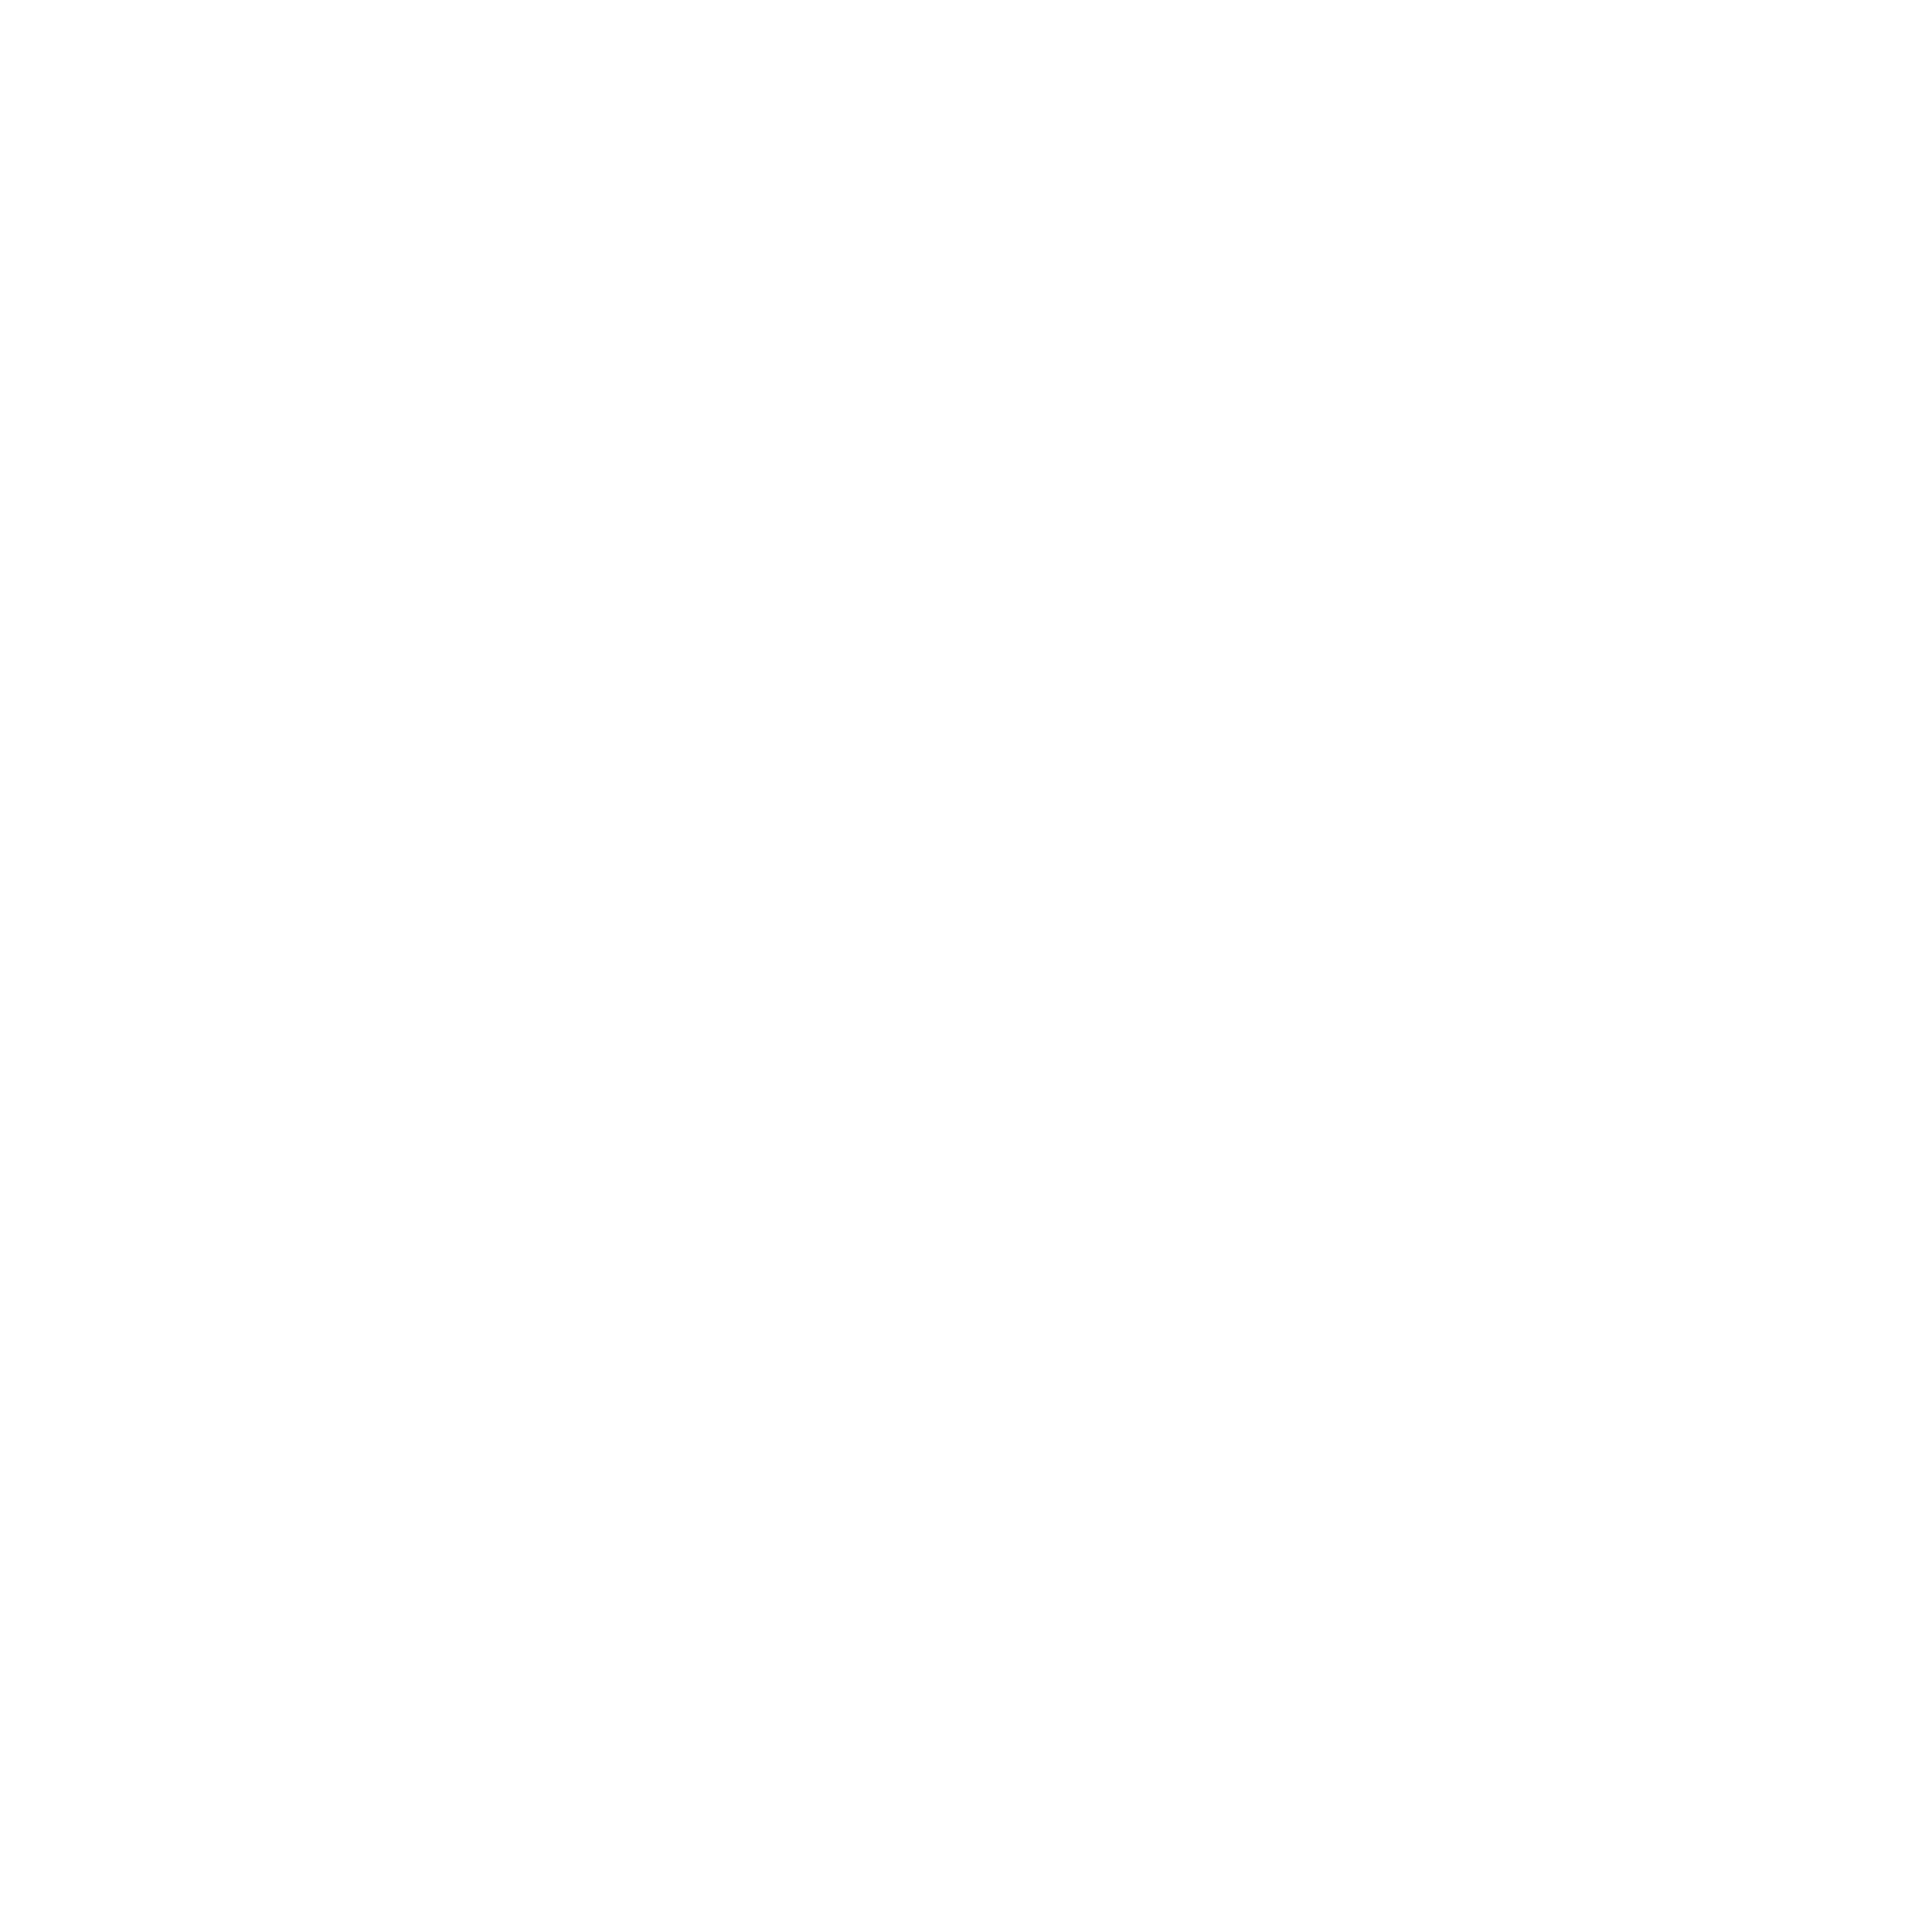 Dr. Pedro Pantoja